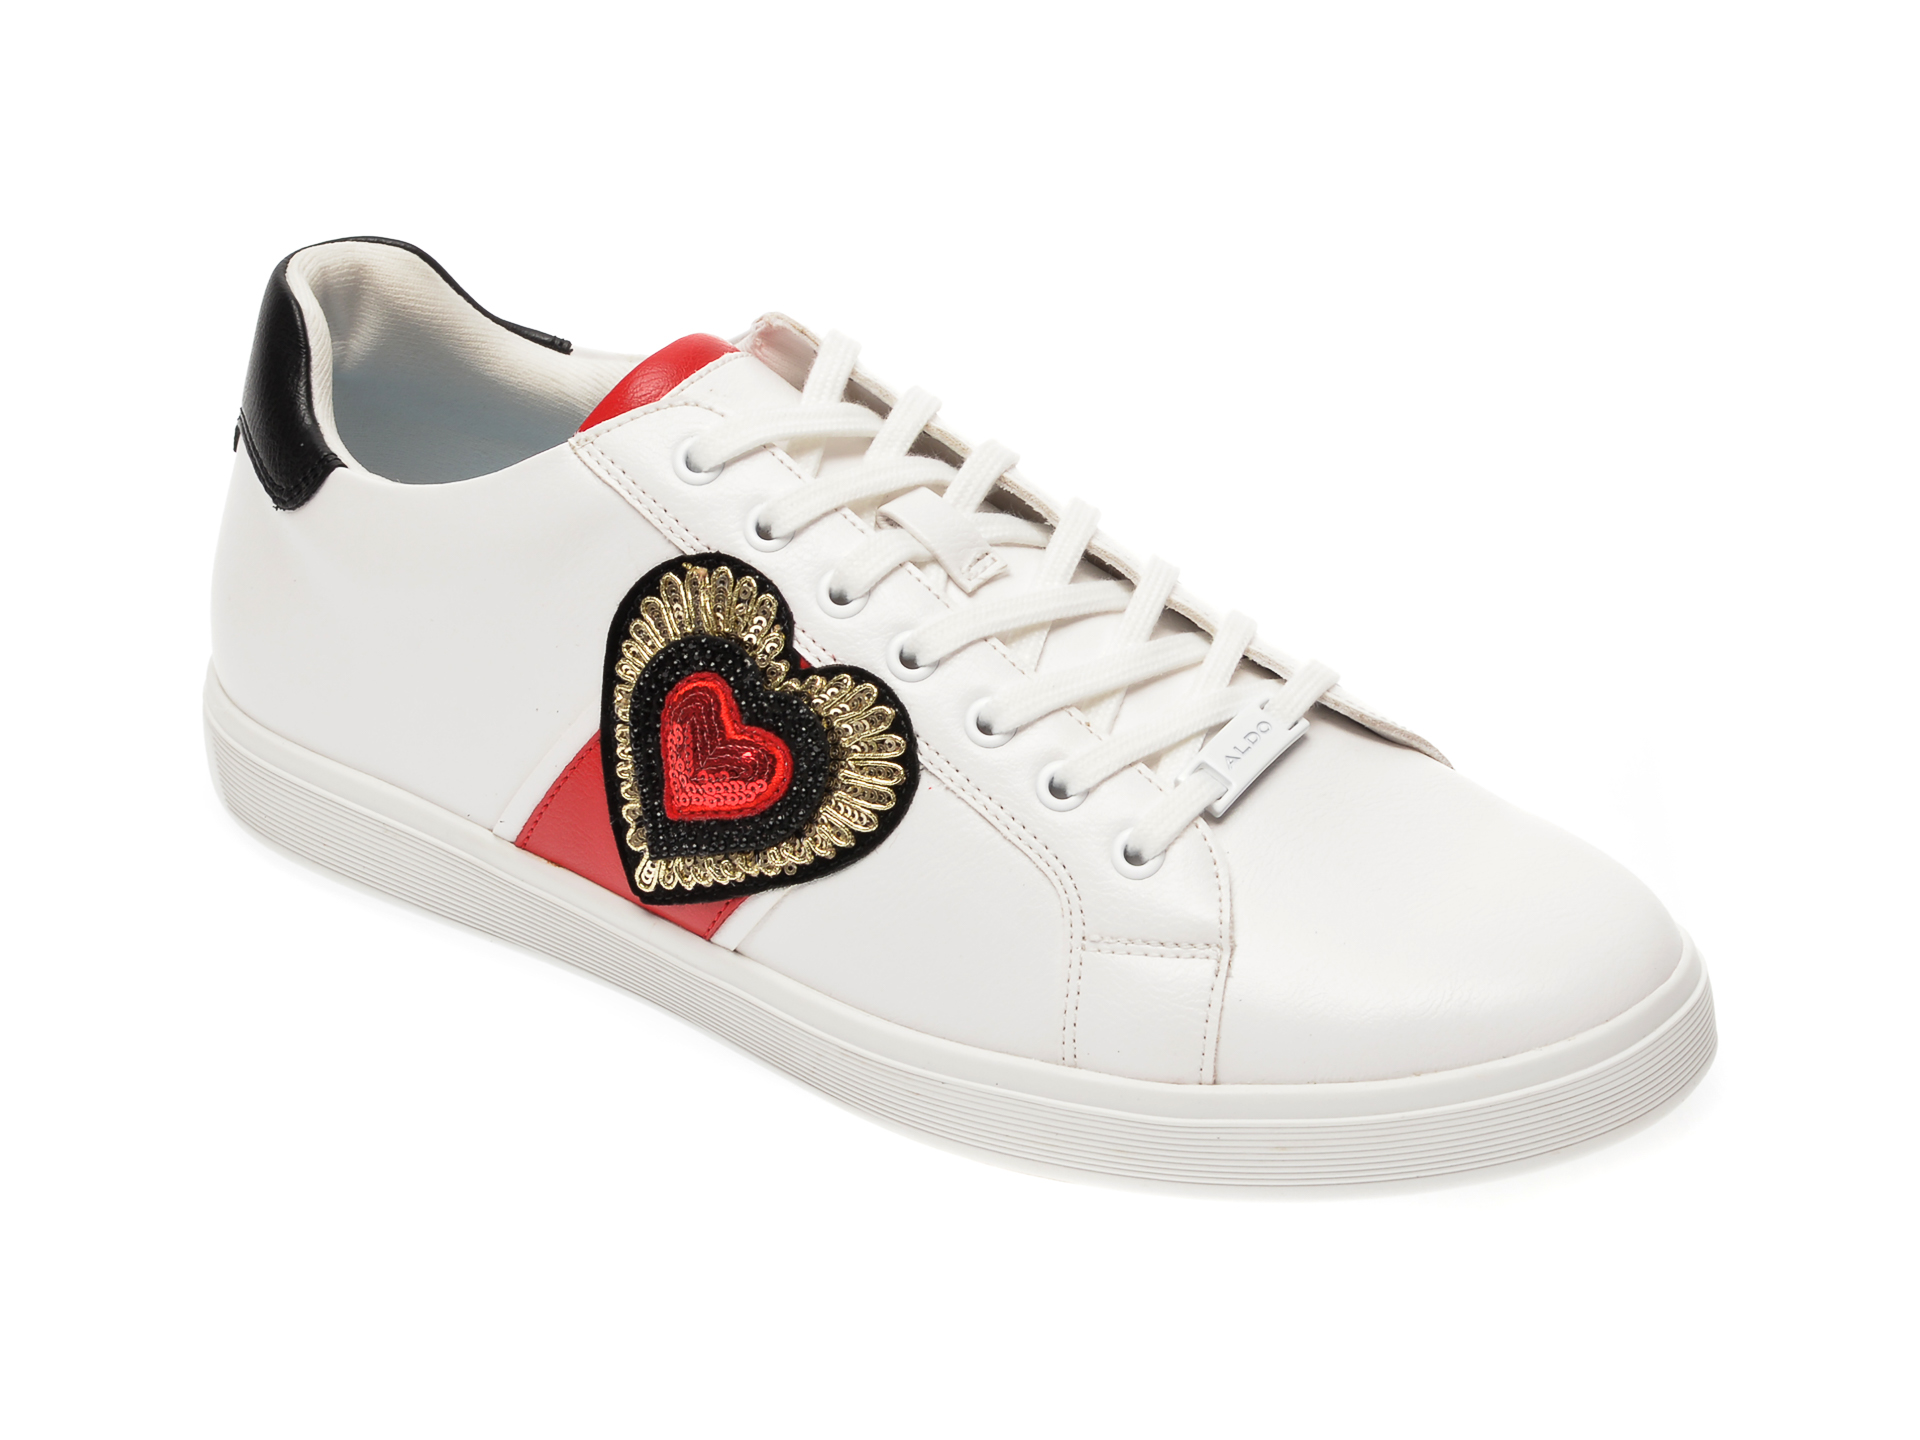 Pantofi sport ALDO albi, Pramju100, din piele ecologica